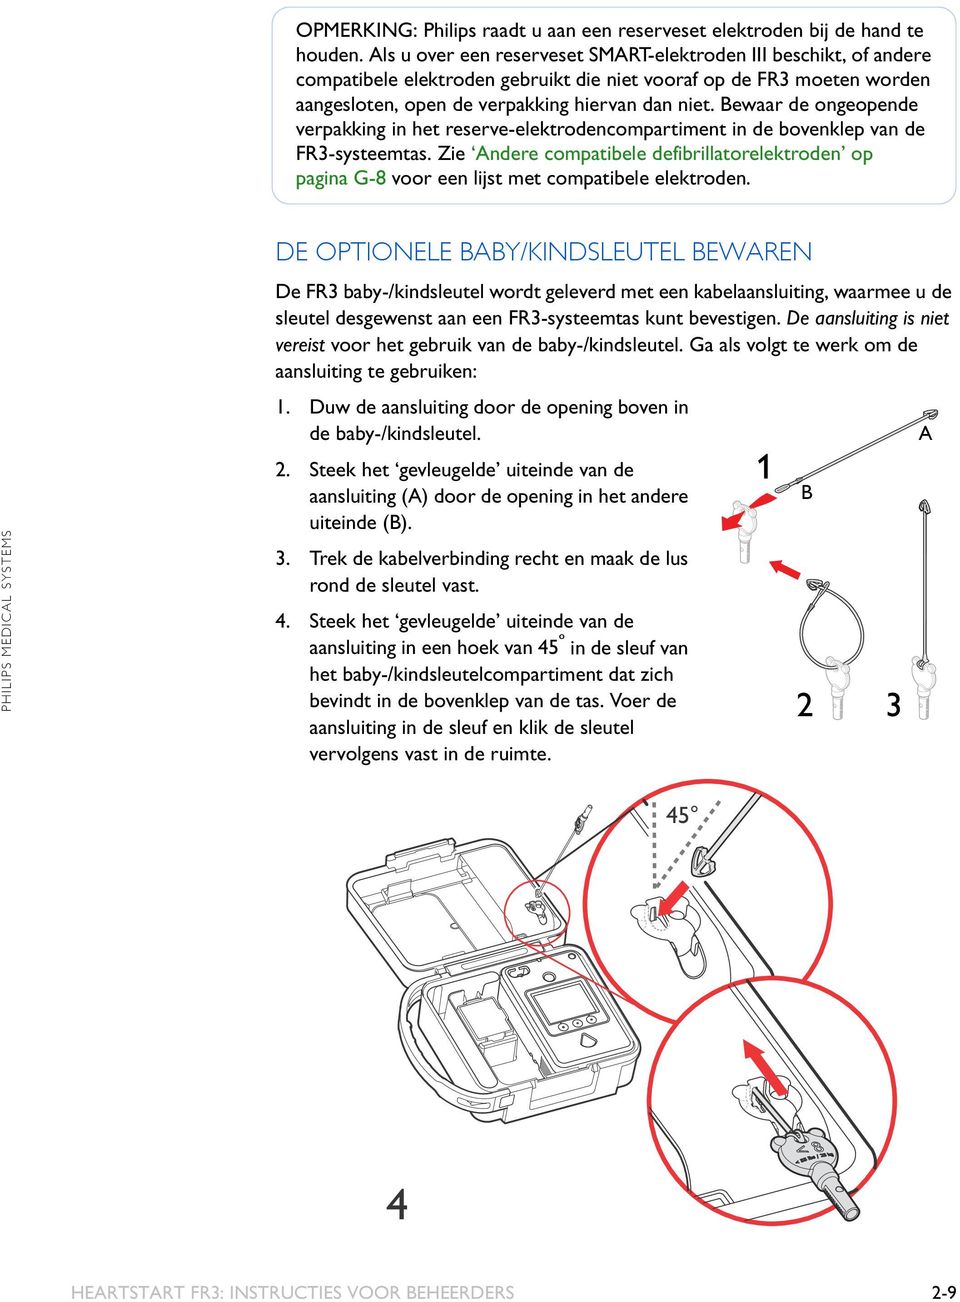 Bewaar de ongeopende verpakking in het reserve-elektrodencompartiment in de bovenklep van de FR3-systeemtas.